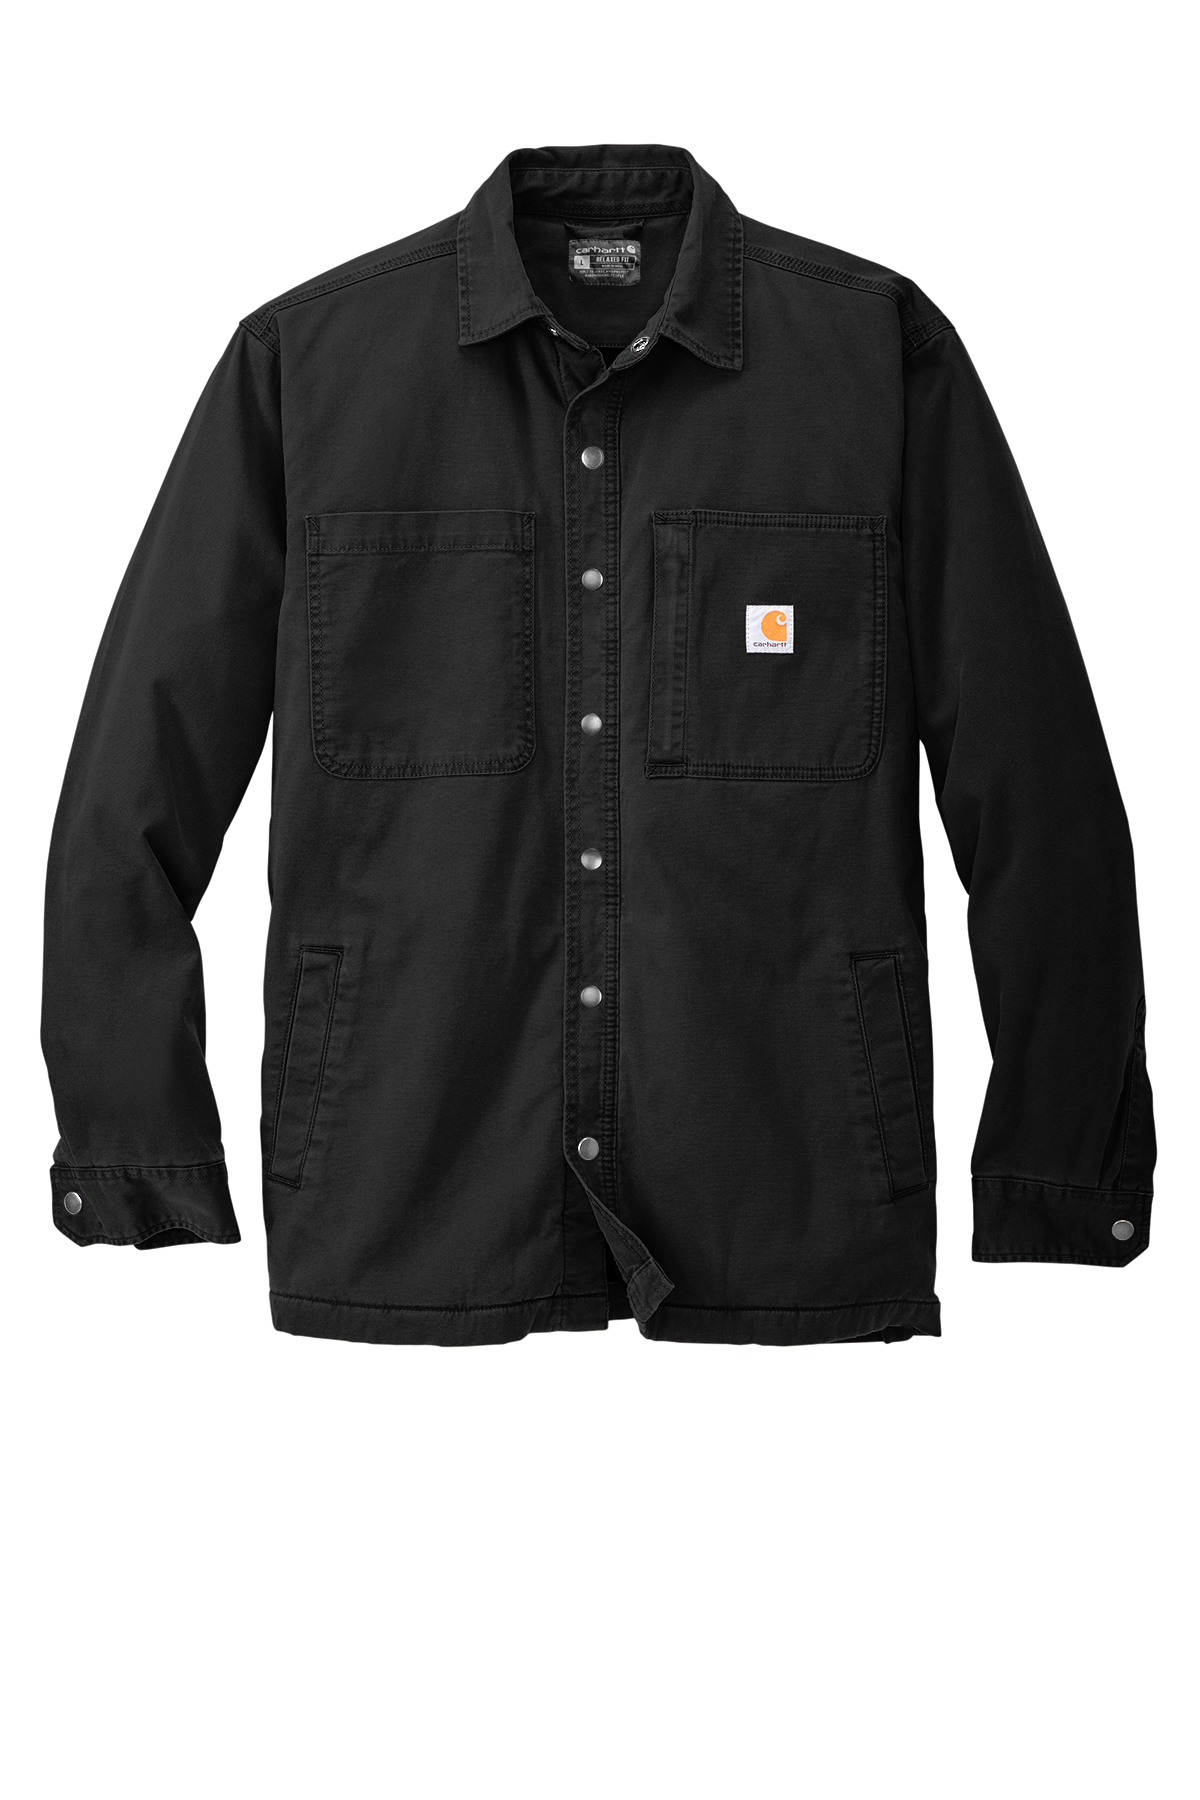 Carhartt Rugged Flex Fleece-Lined Shirt Jac | Product | SanMar